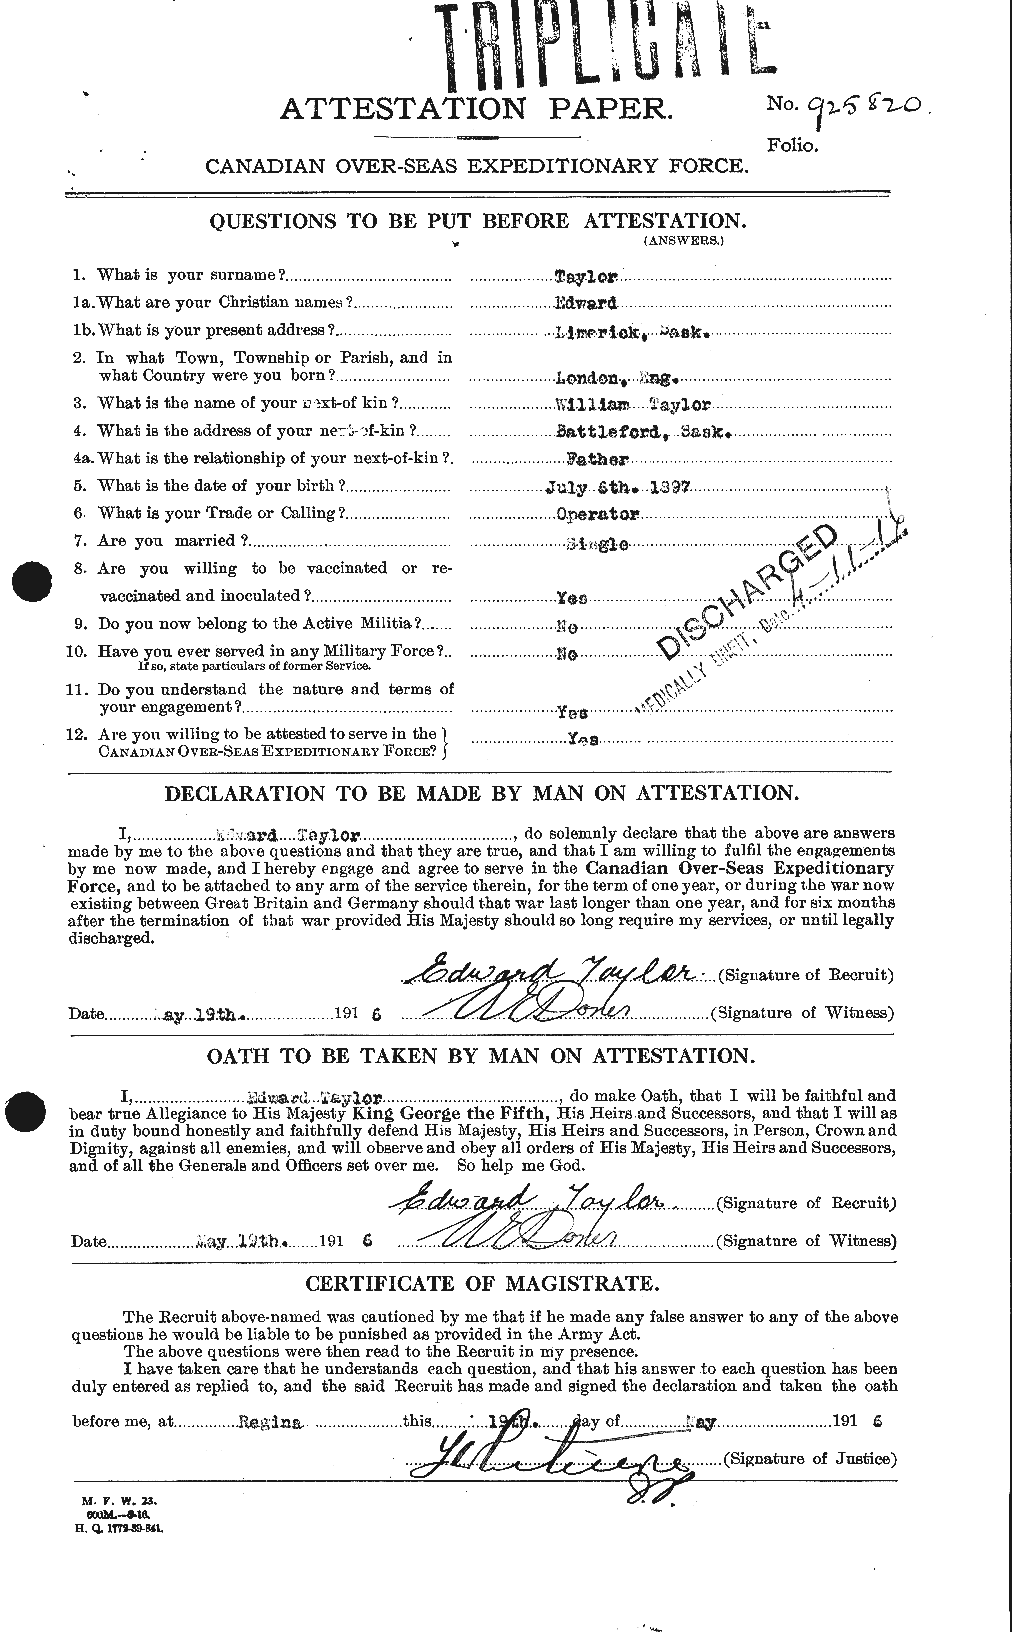 Dossiers du Personnel de la Première Guerre mondiale - CEC 627283a